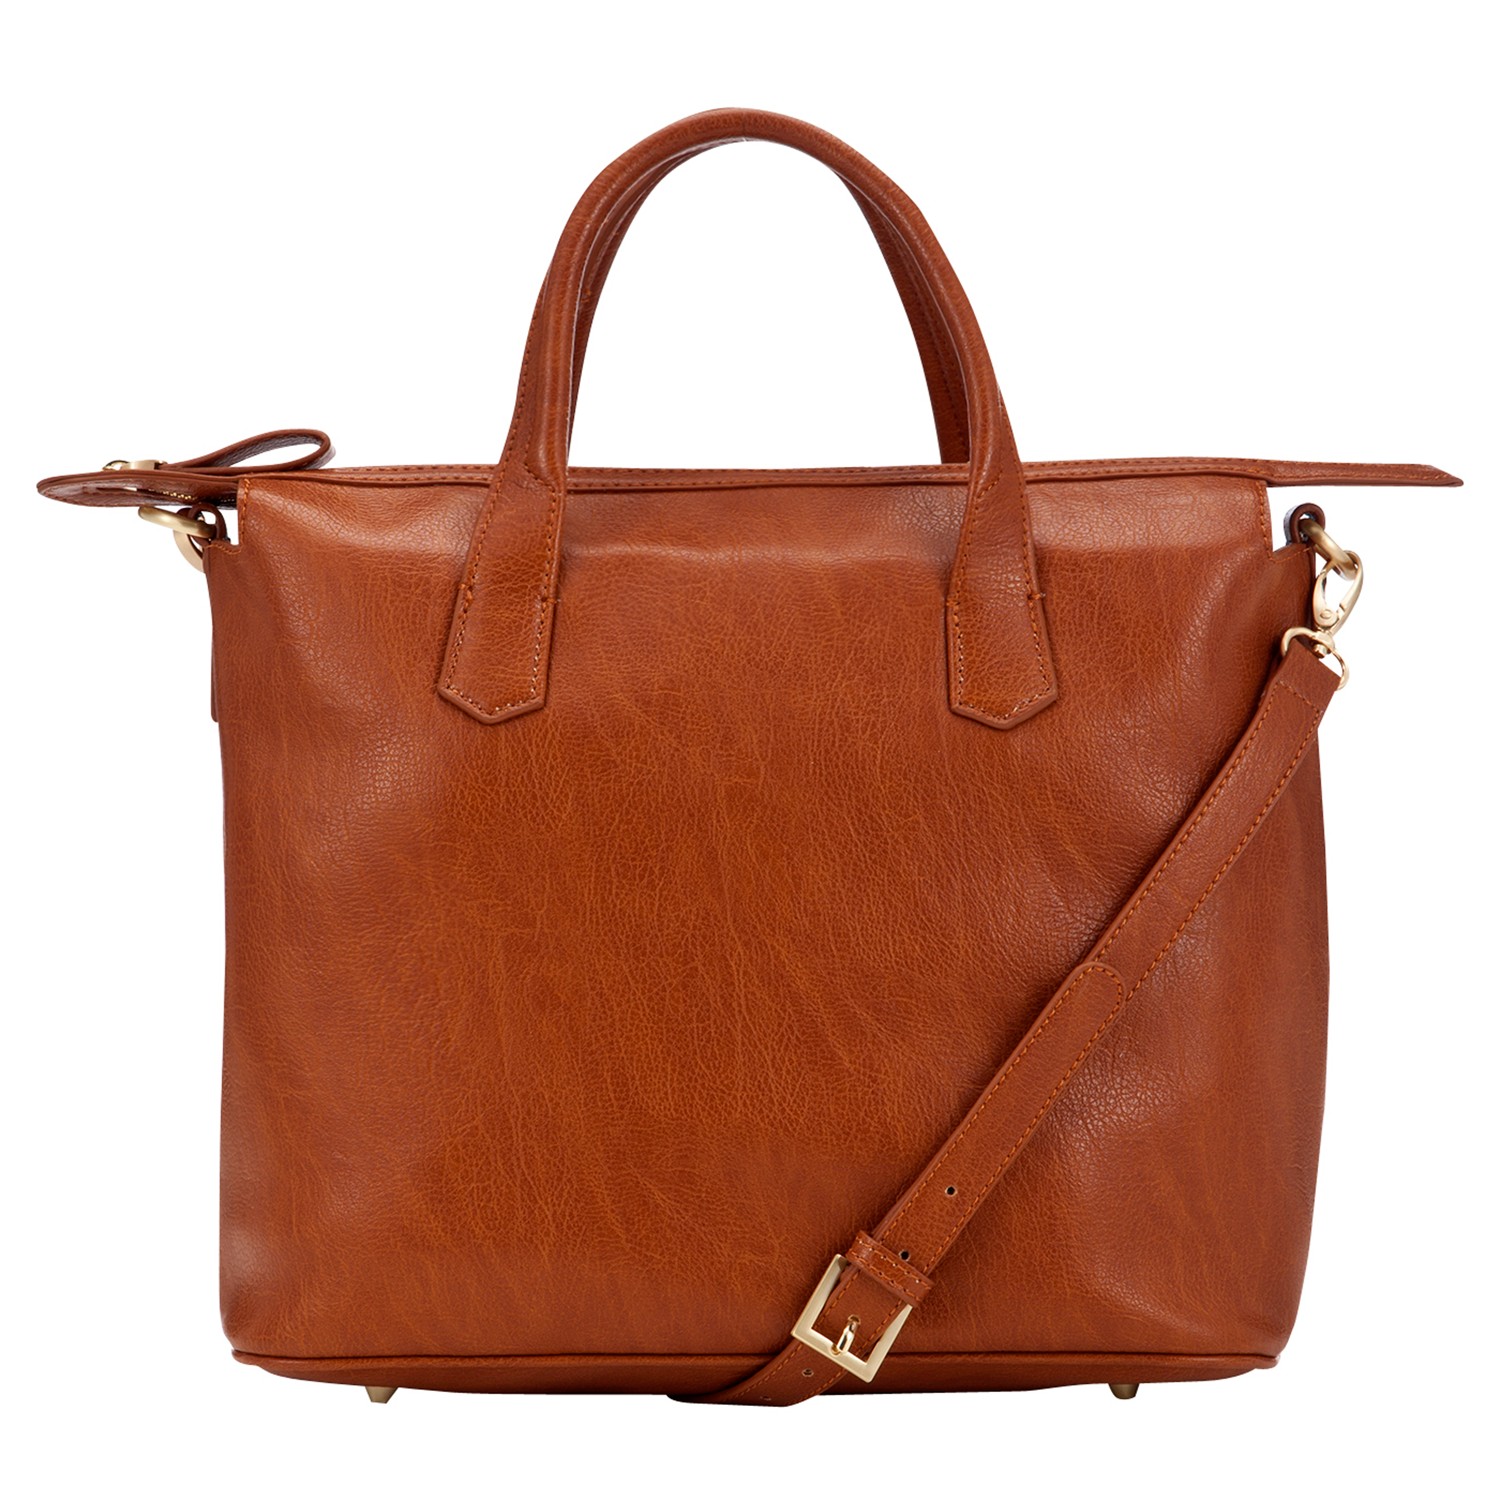 John Lewis New Grainy Soft Tote Handbag in Brown (Tan) | Lyst